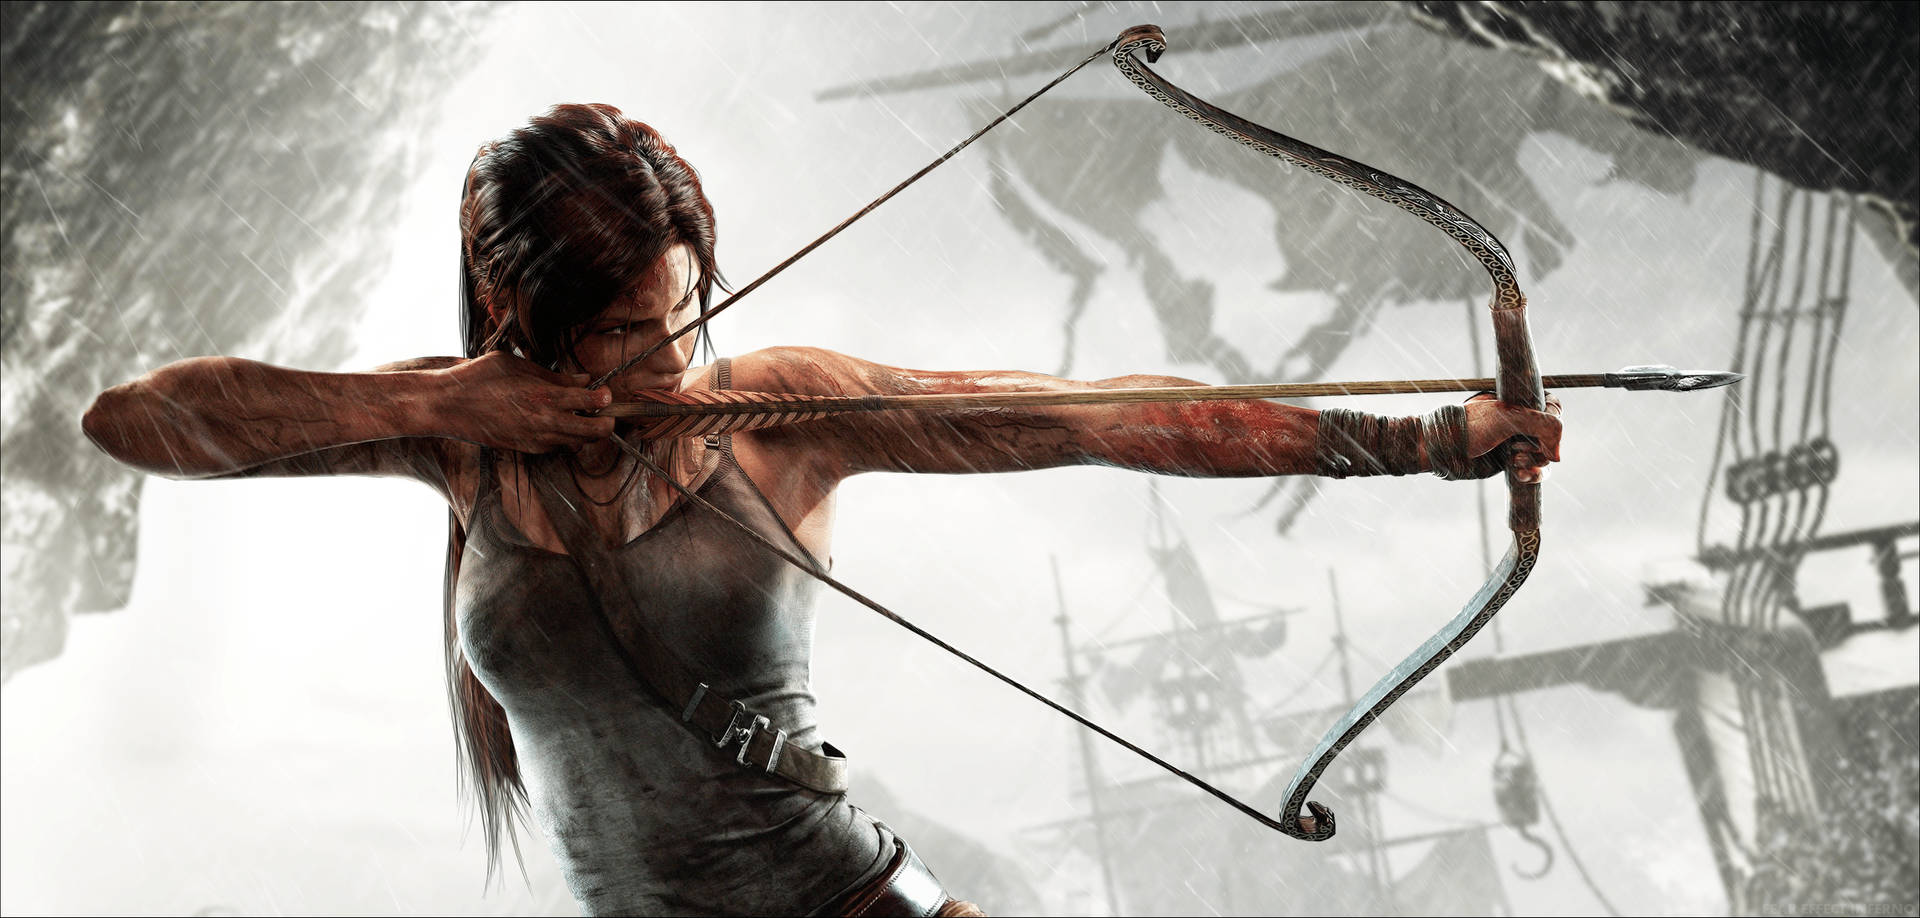 Papelde Parede Para Computador Ou Celular Com O Jogo 3d Da Lara Croft, Tomb Raider. Papel de Parede